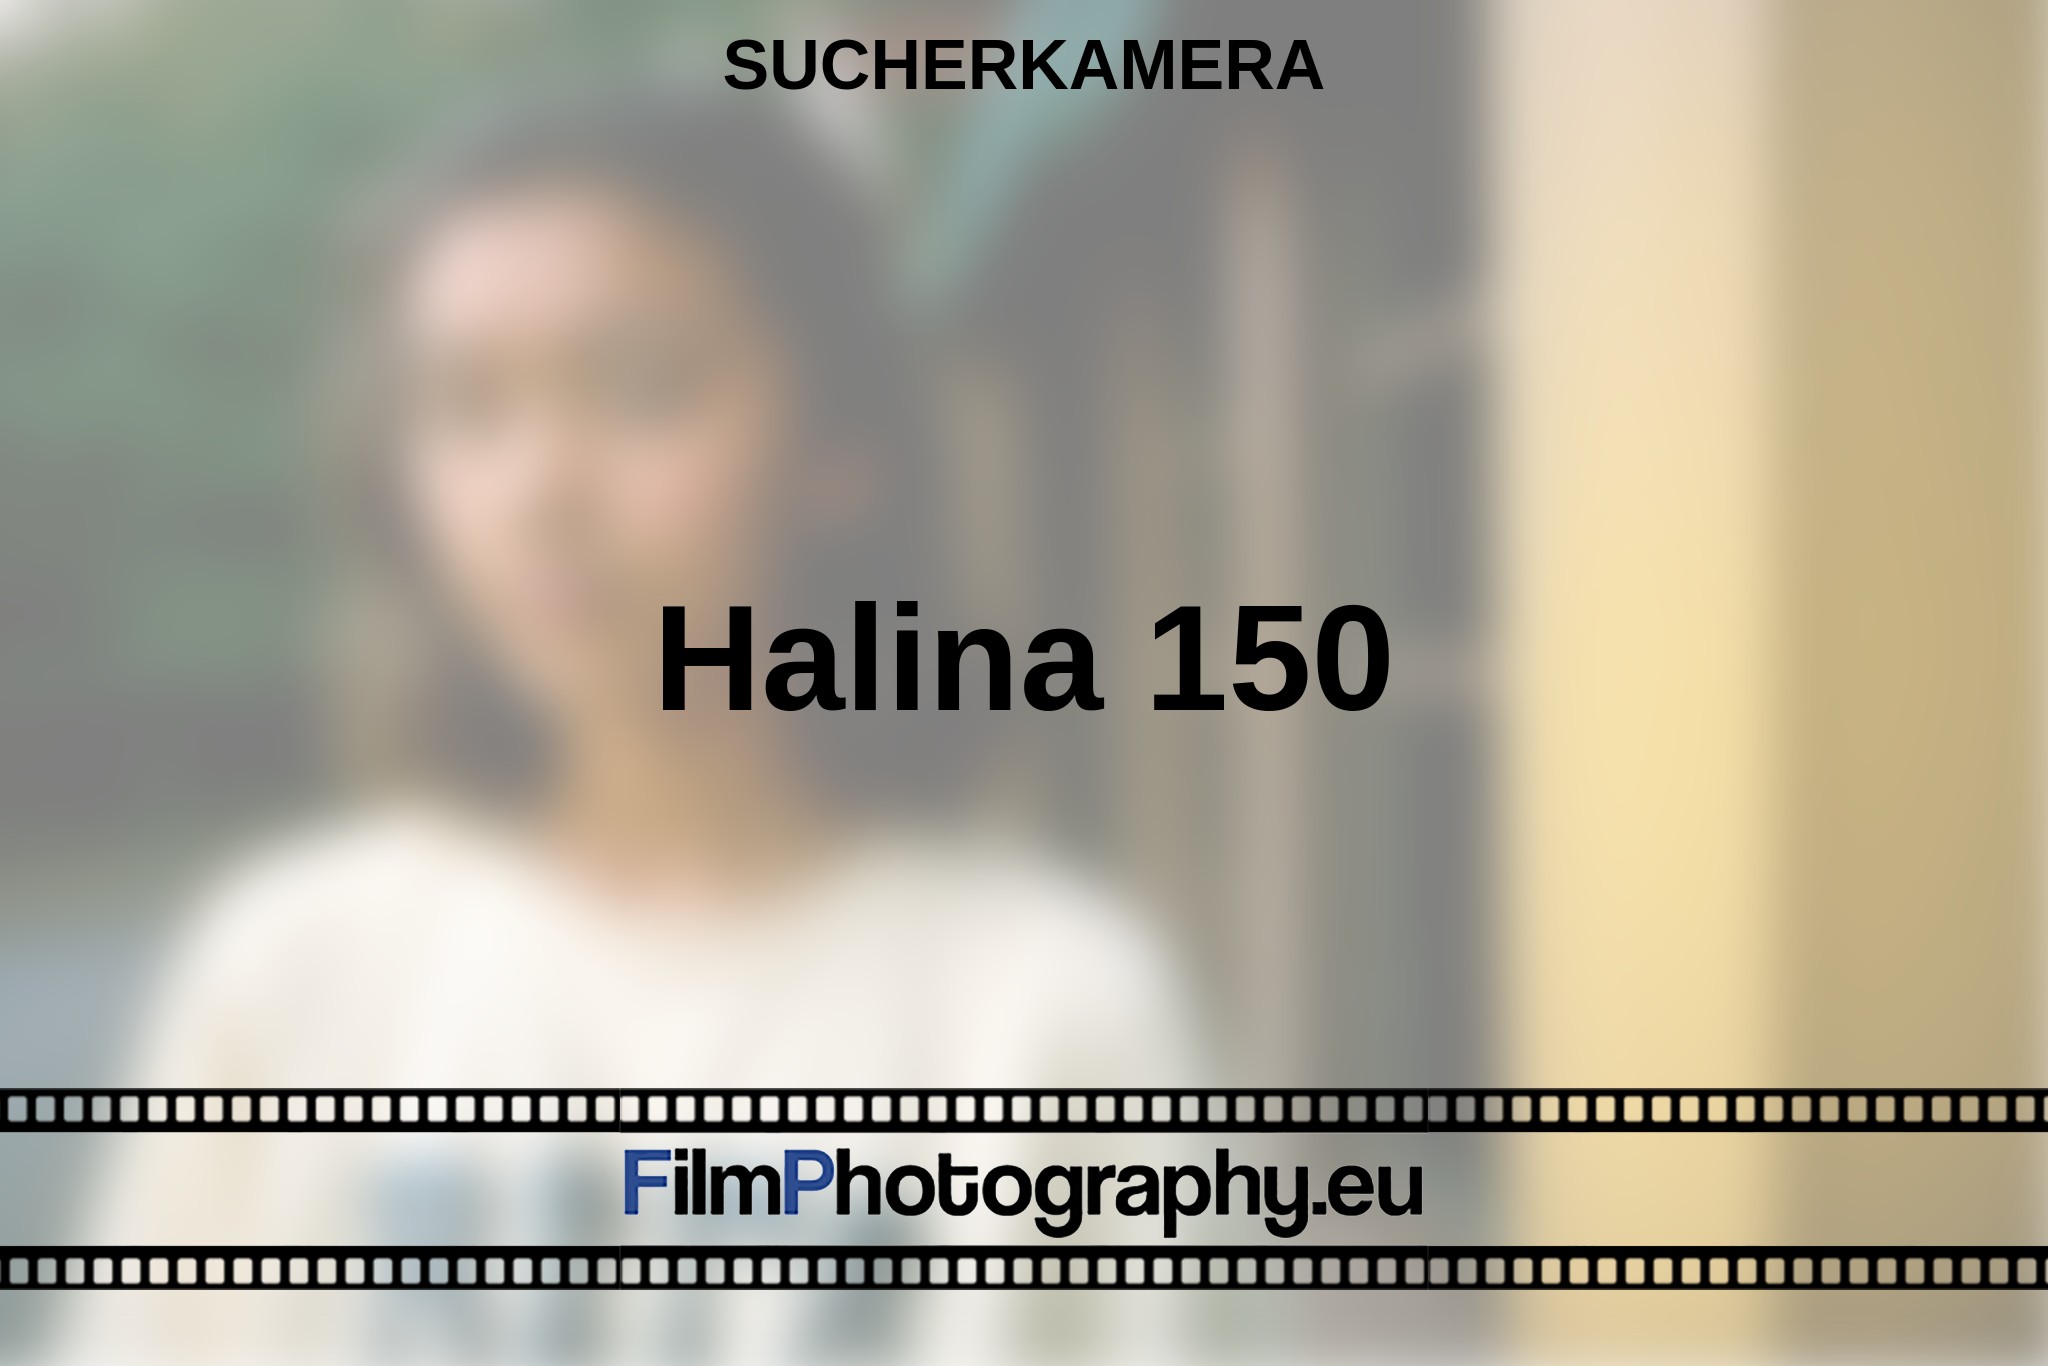 halina-150-sucherkamera-bnv.jpg